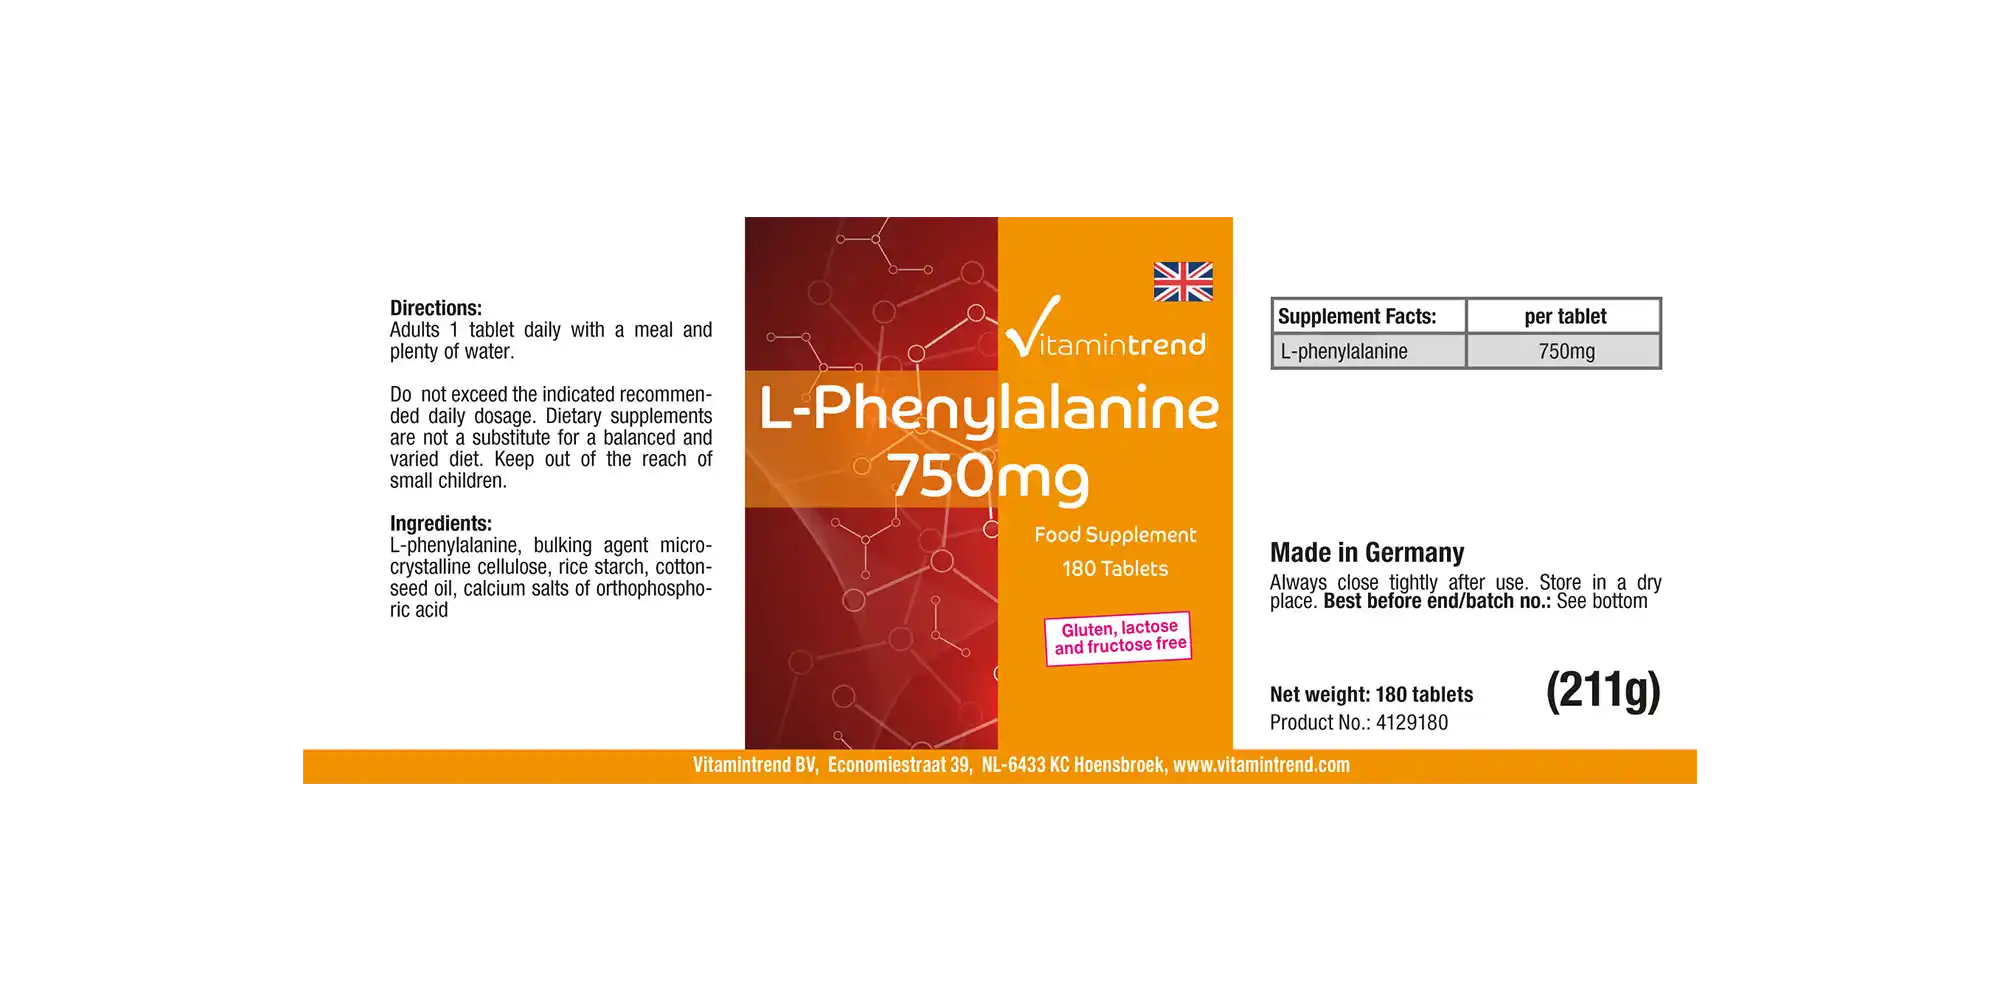 L-Phenylalanin 750mg - hochdosiert - vegan - 180 Tabletten